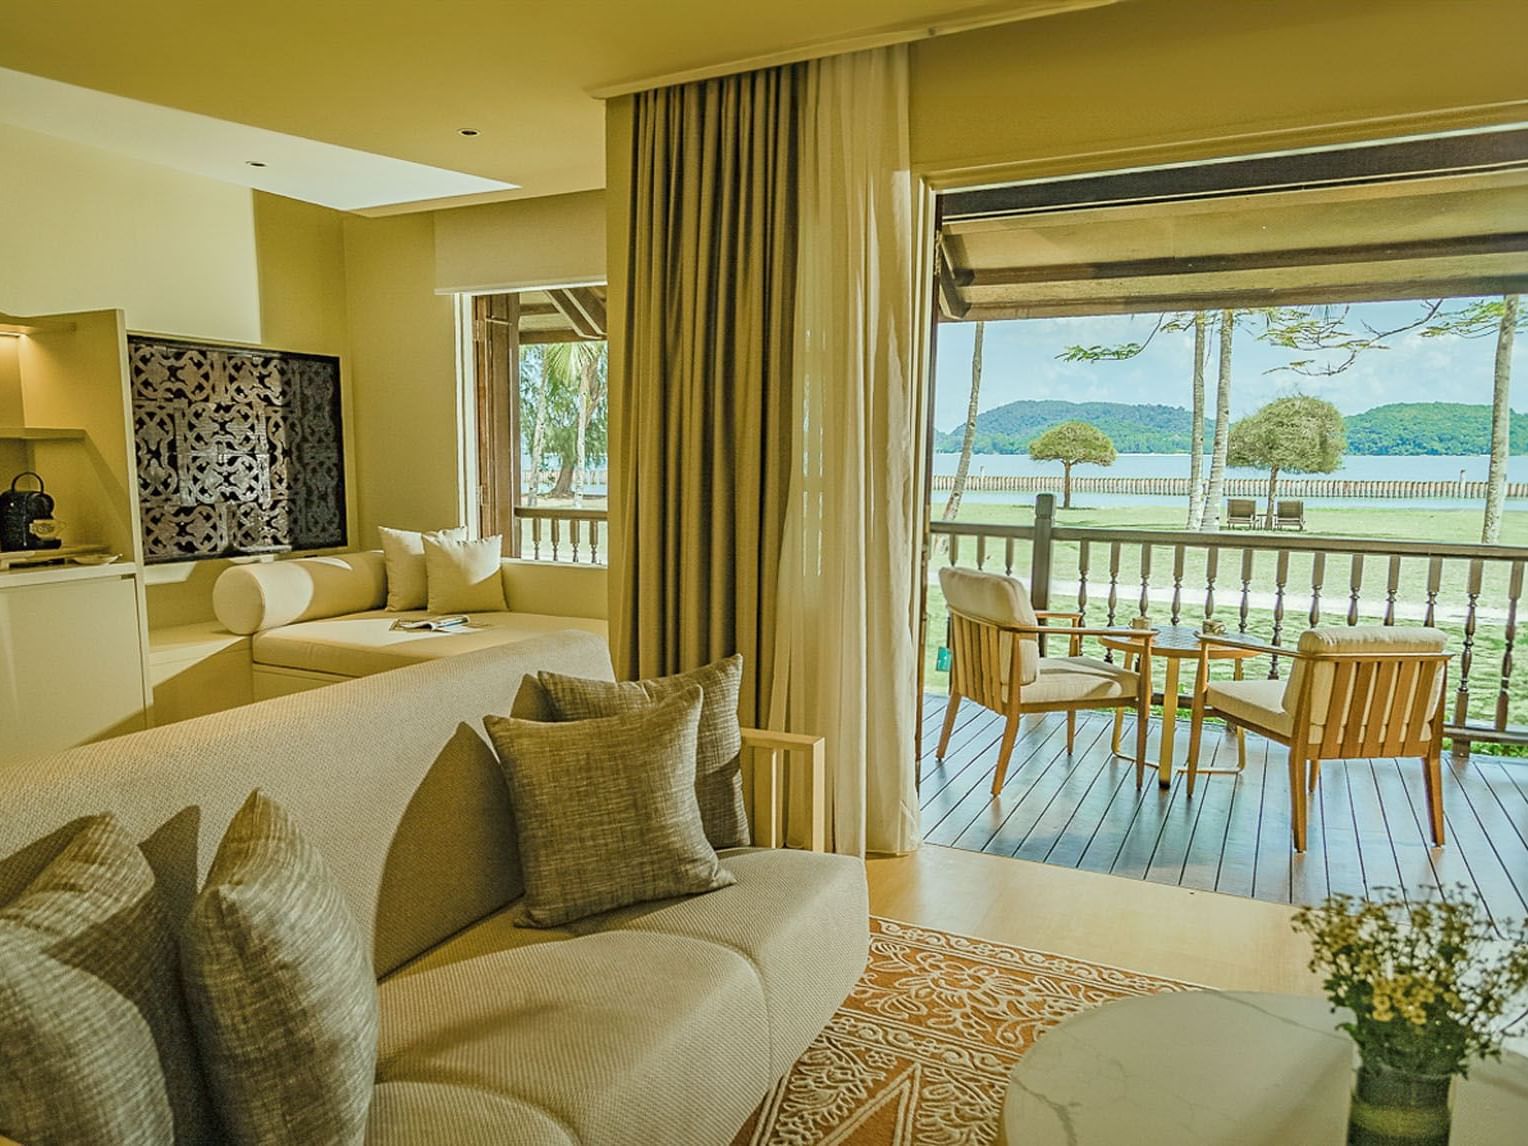 Sofa & balcony in Pelangi Suite at Pelangi Beach Resort & Spa